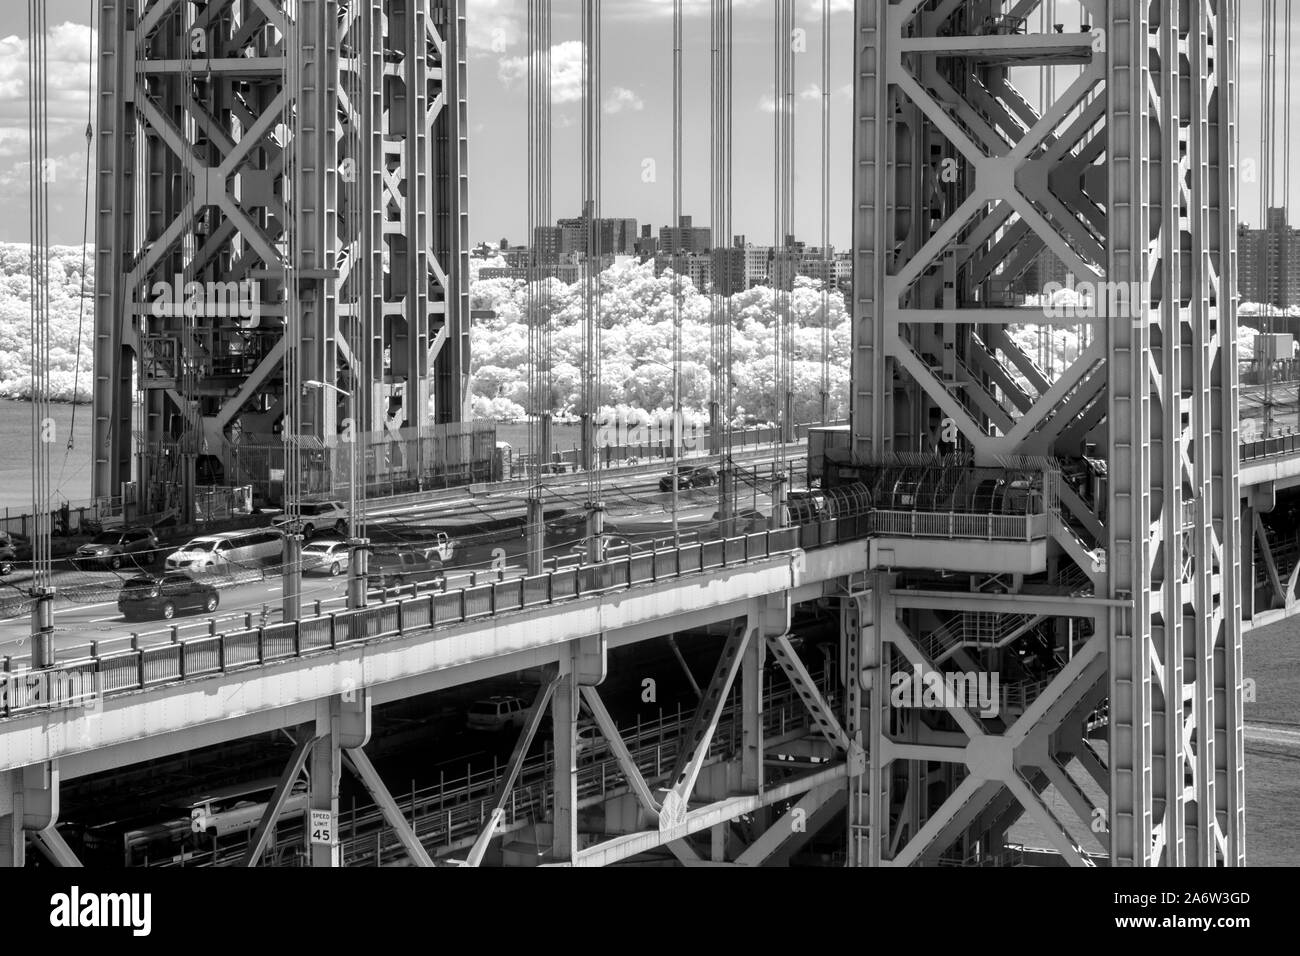 New York City Washington Bridge GWB - Ein infared schwarz-weiß Bild von der George Washington Brücke während des Sommers mit puffy Clouds. Dieses Bild ist verfügbar Stockfoto